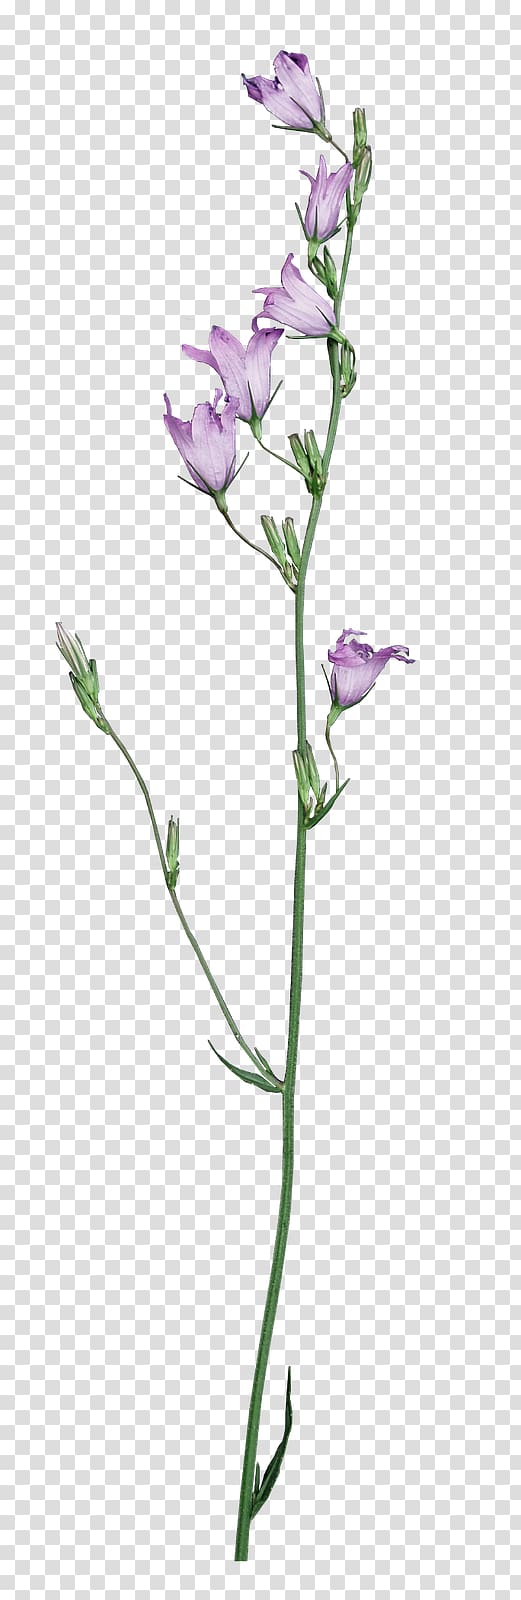 Cut flowers Plant stem Flora Idea, Kiss Me transparent background PNG clipart